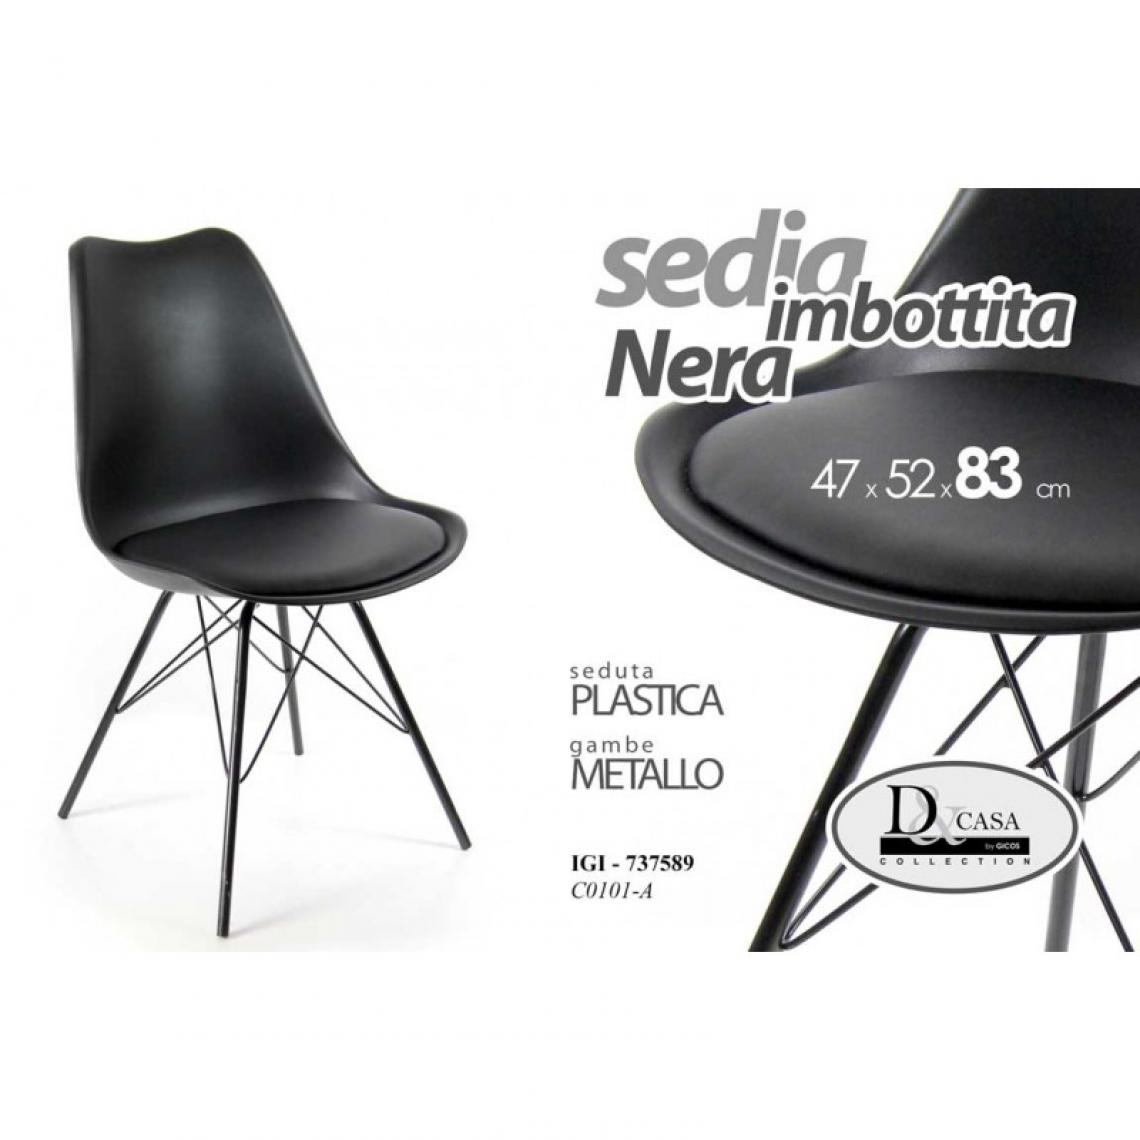 Webmarketpoint - Chaise de bureau à domicile en plastique et métal noir cm 47 x 52 x 83 h - Chaises